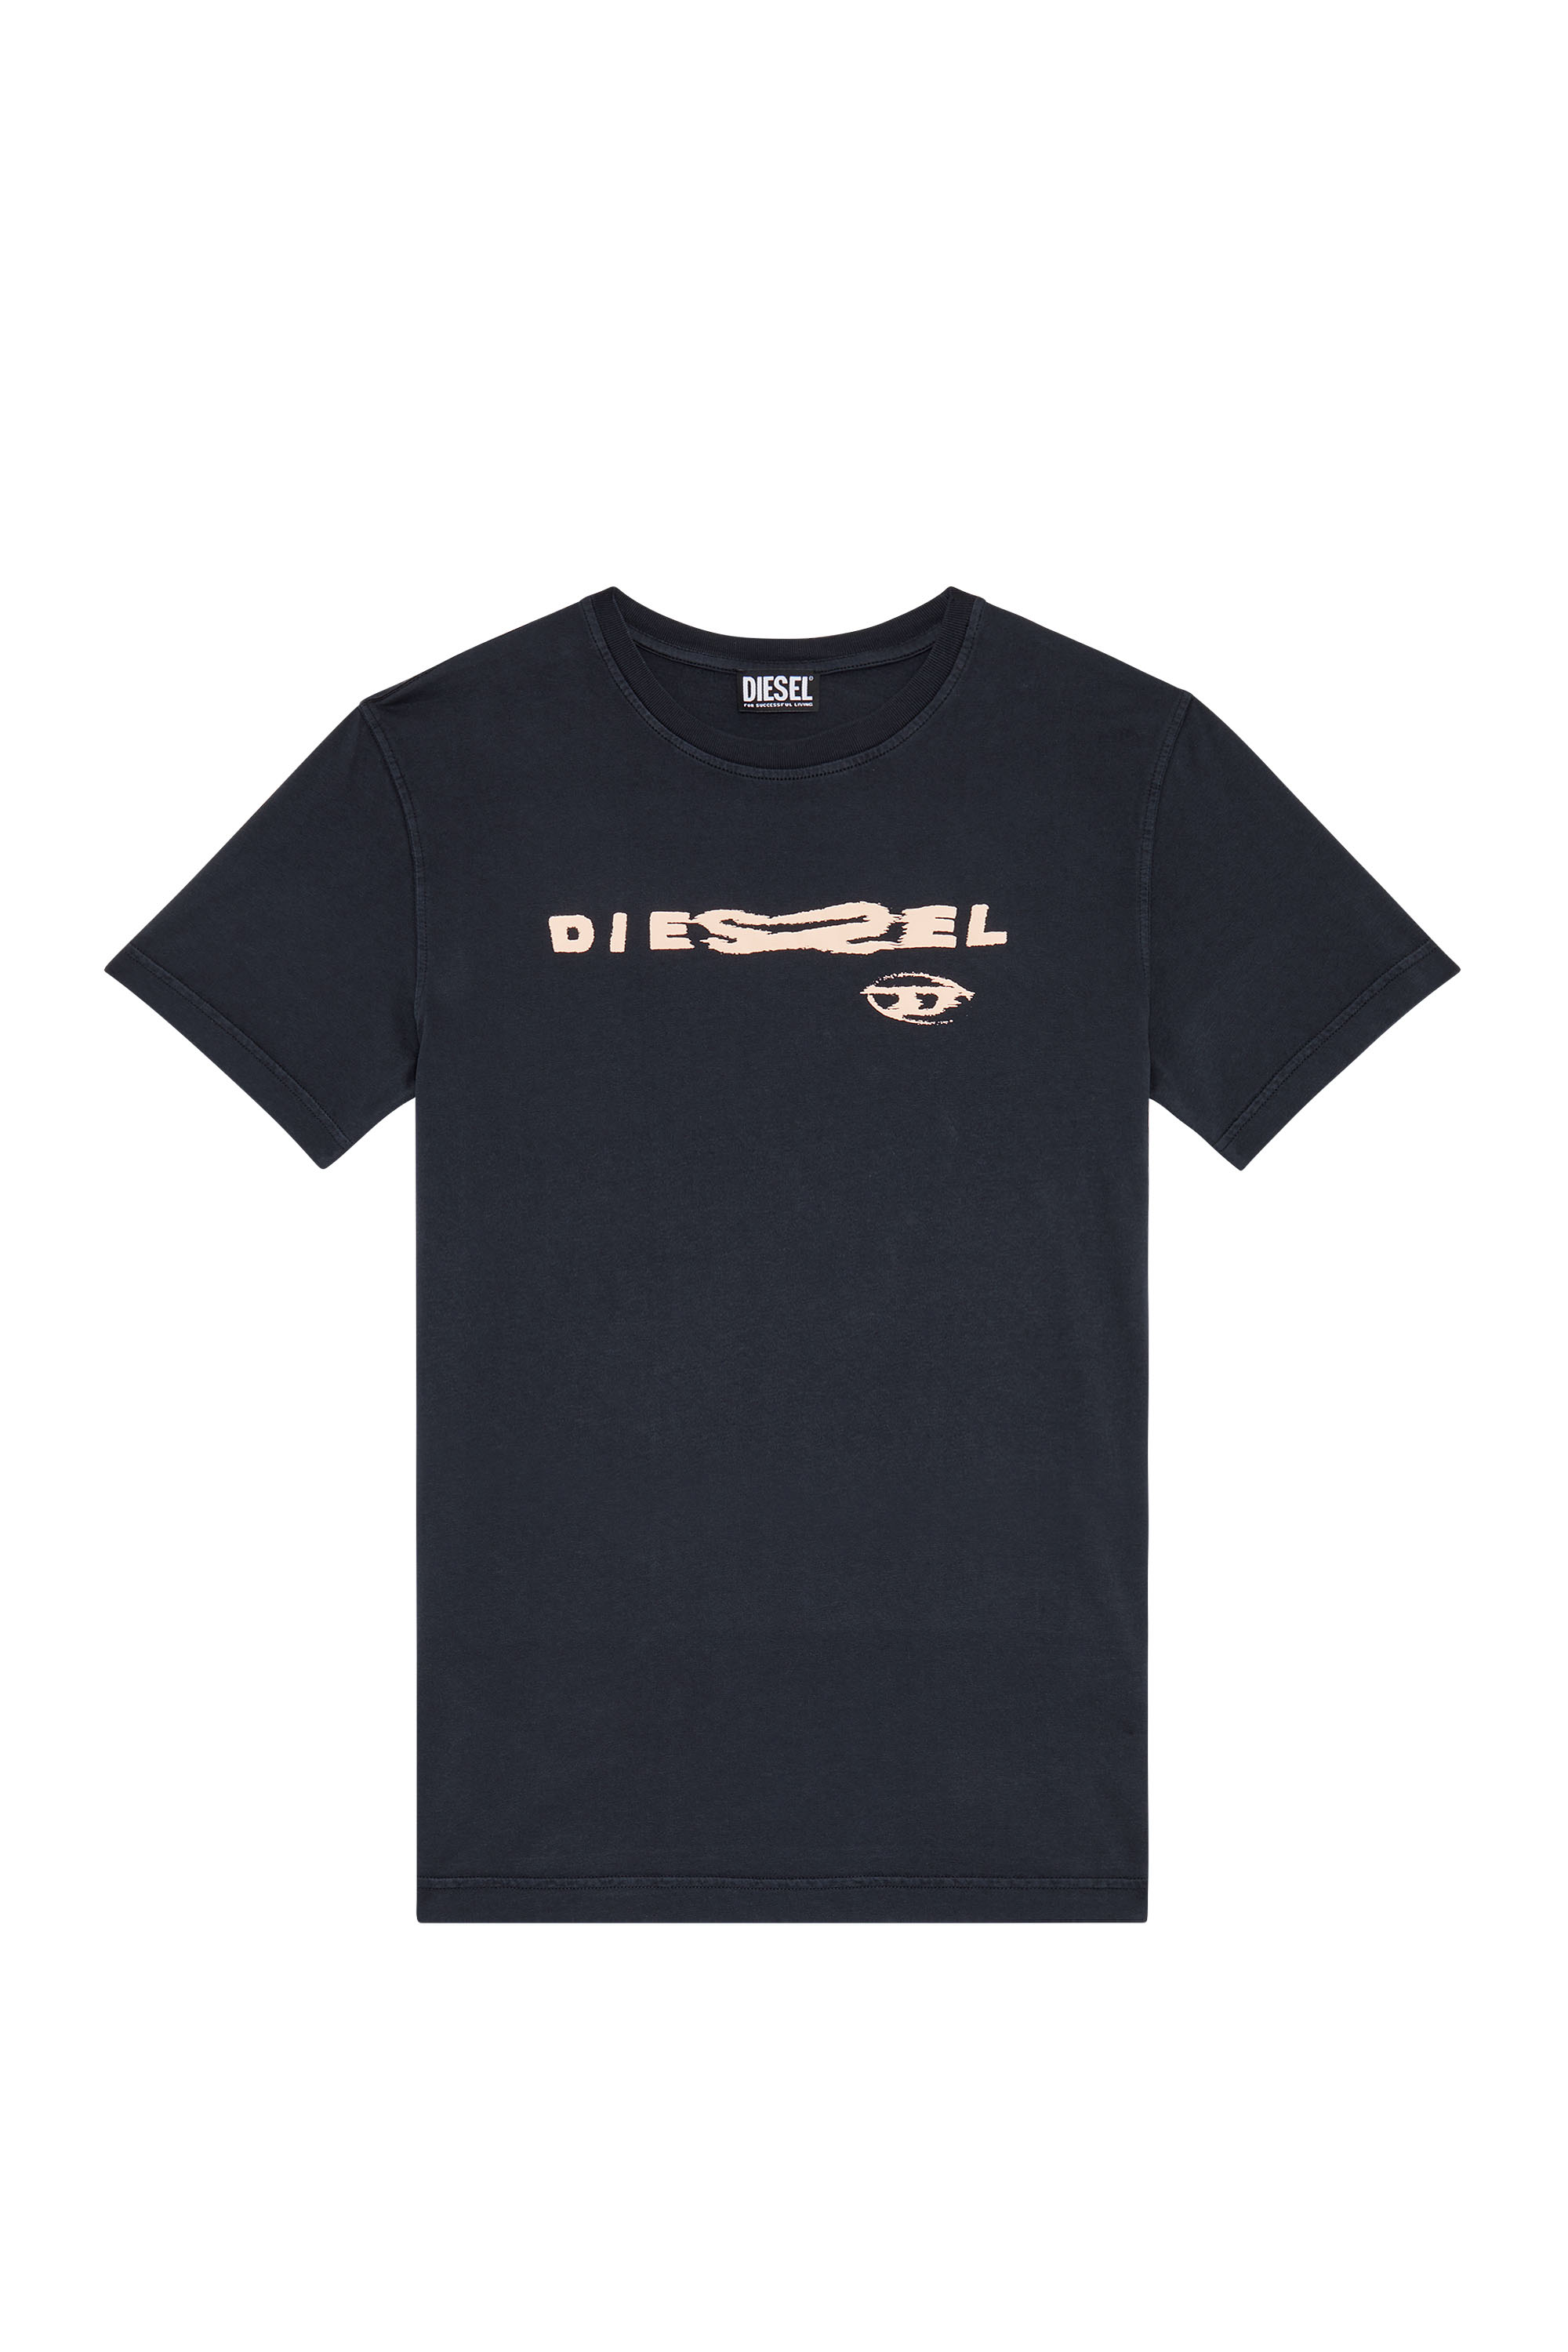 Diesel - T-DANNY, Black - Image 3